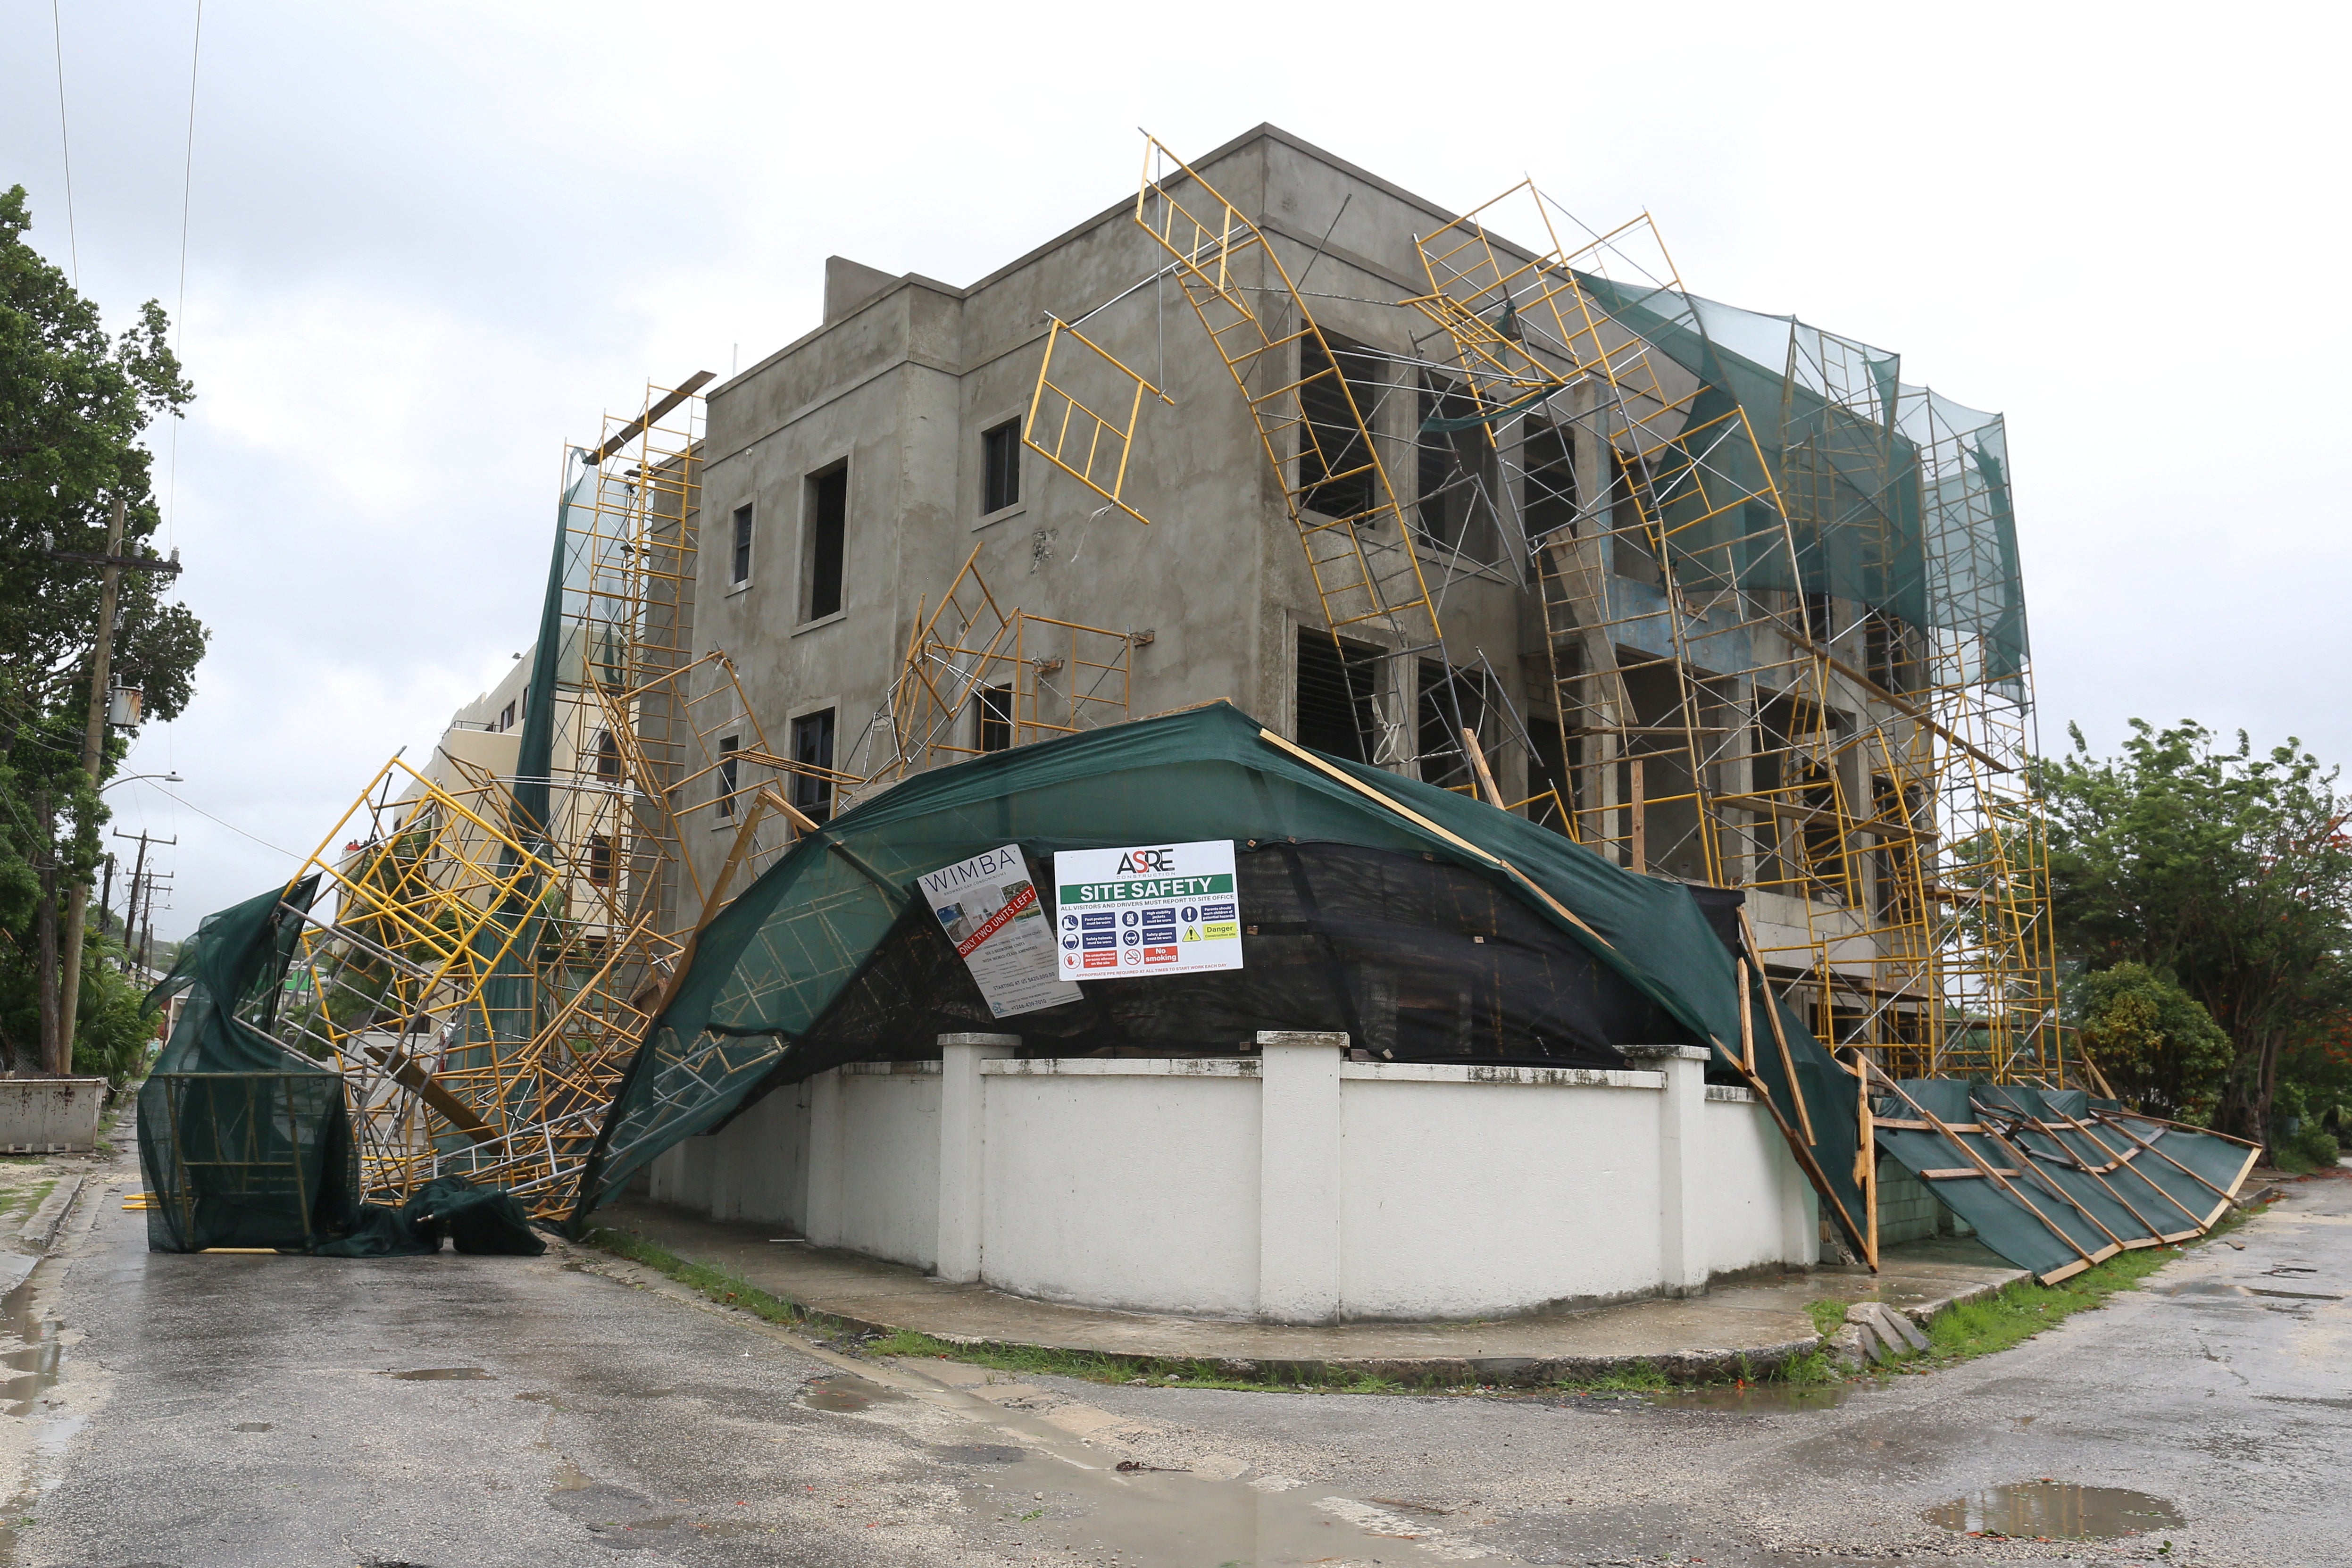 انهارت سقالات على مبنى في بريدجتاون، بربادوس، بعد أن ضرب إعصار بيريل الجزيرة.